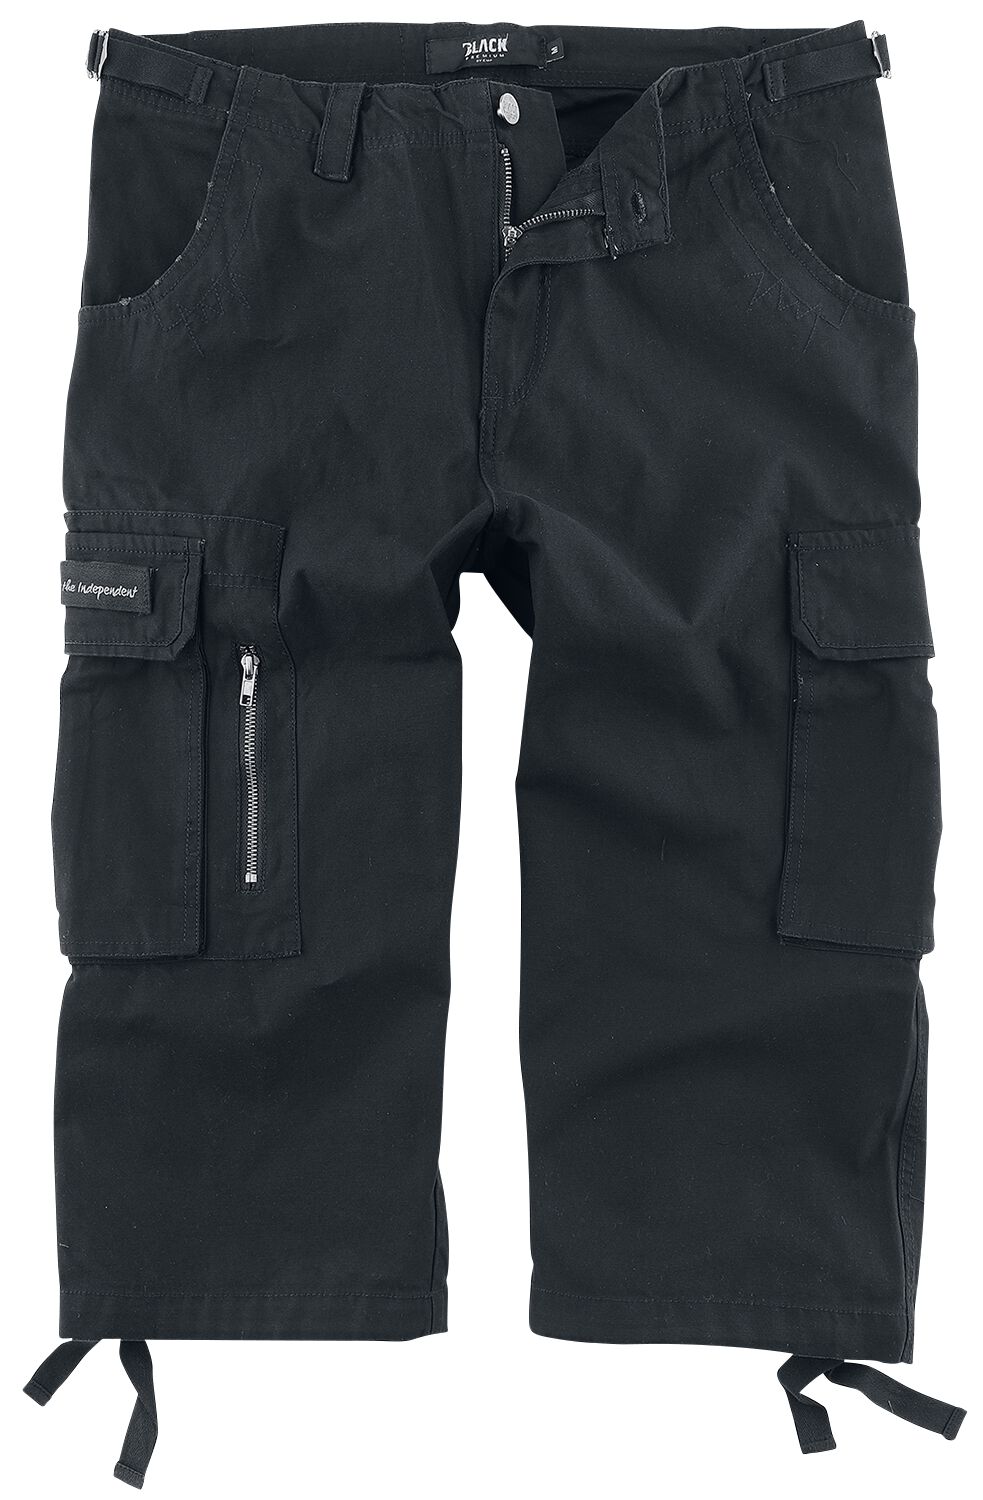 Black Premium by EMP 3/4 Army Vintage Shorts Short schwarz in S